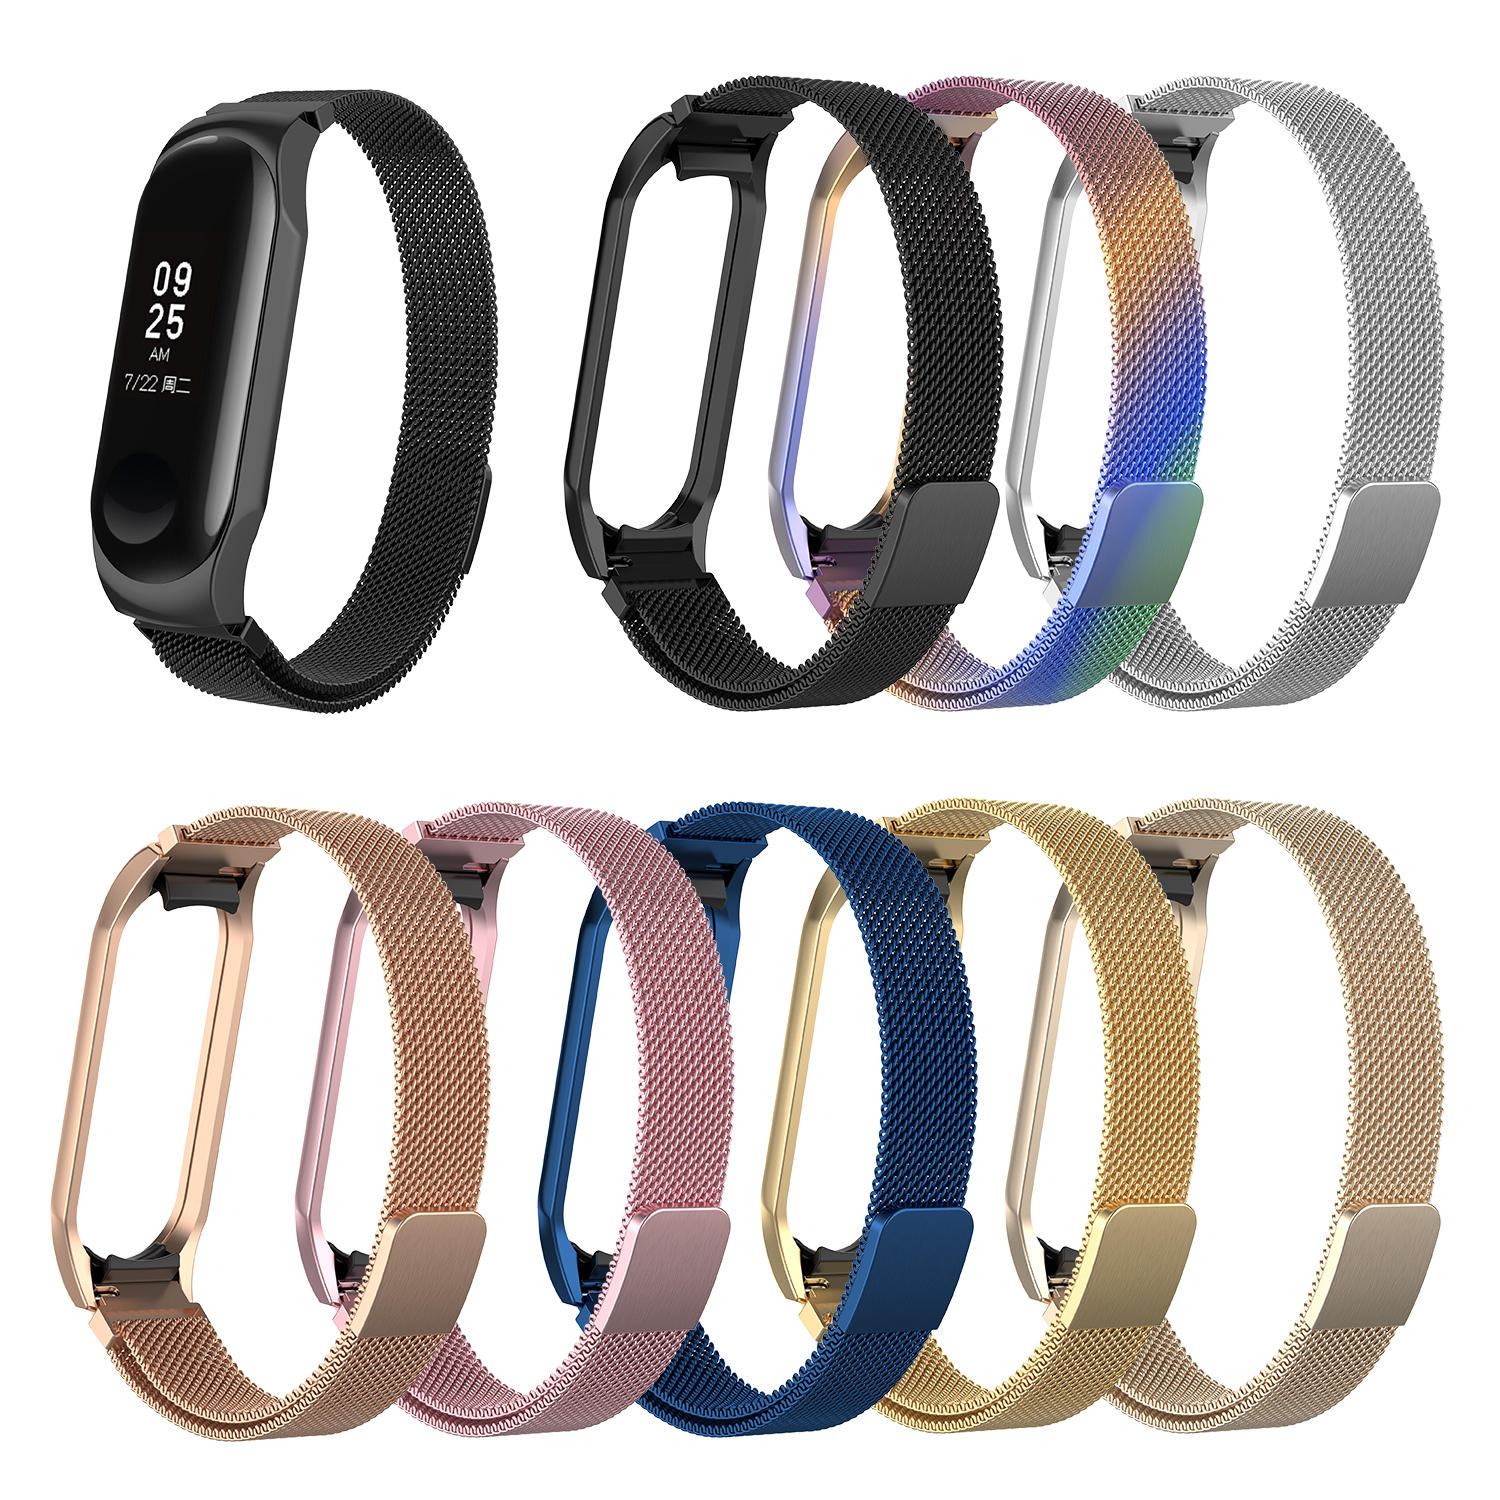 Bakeey volledig stalen Milan Colorful horlogeband voor Xiaomi Mi Band 3 smartwatch niet-origineel